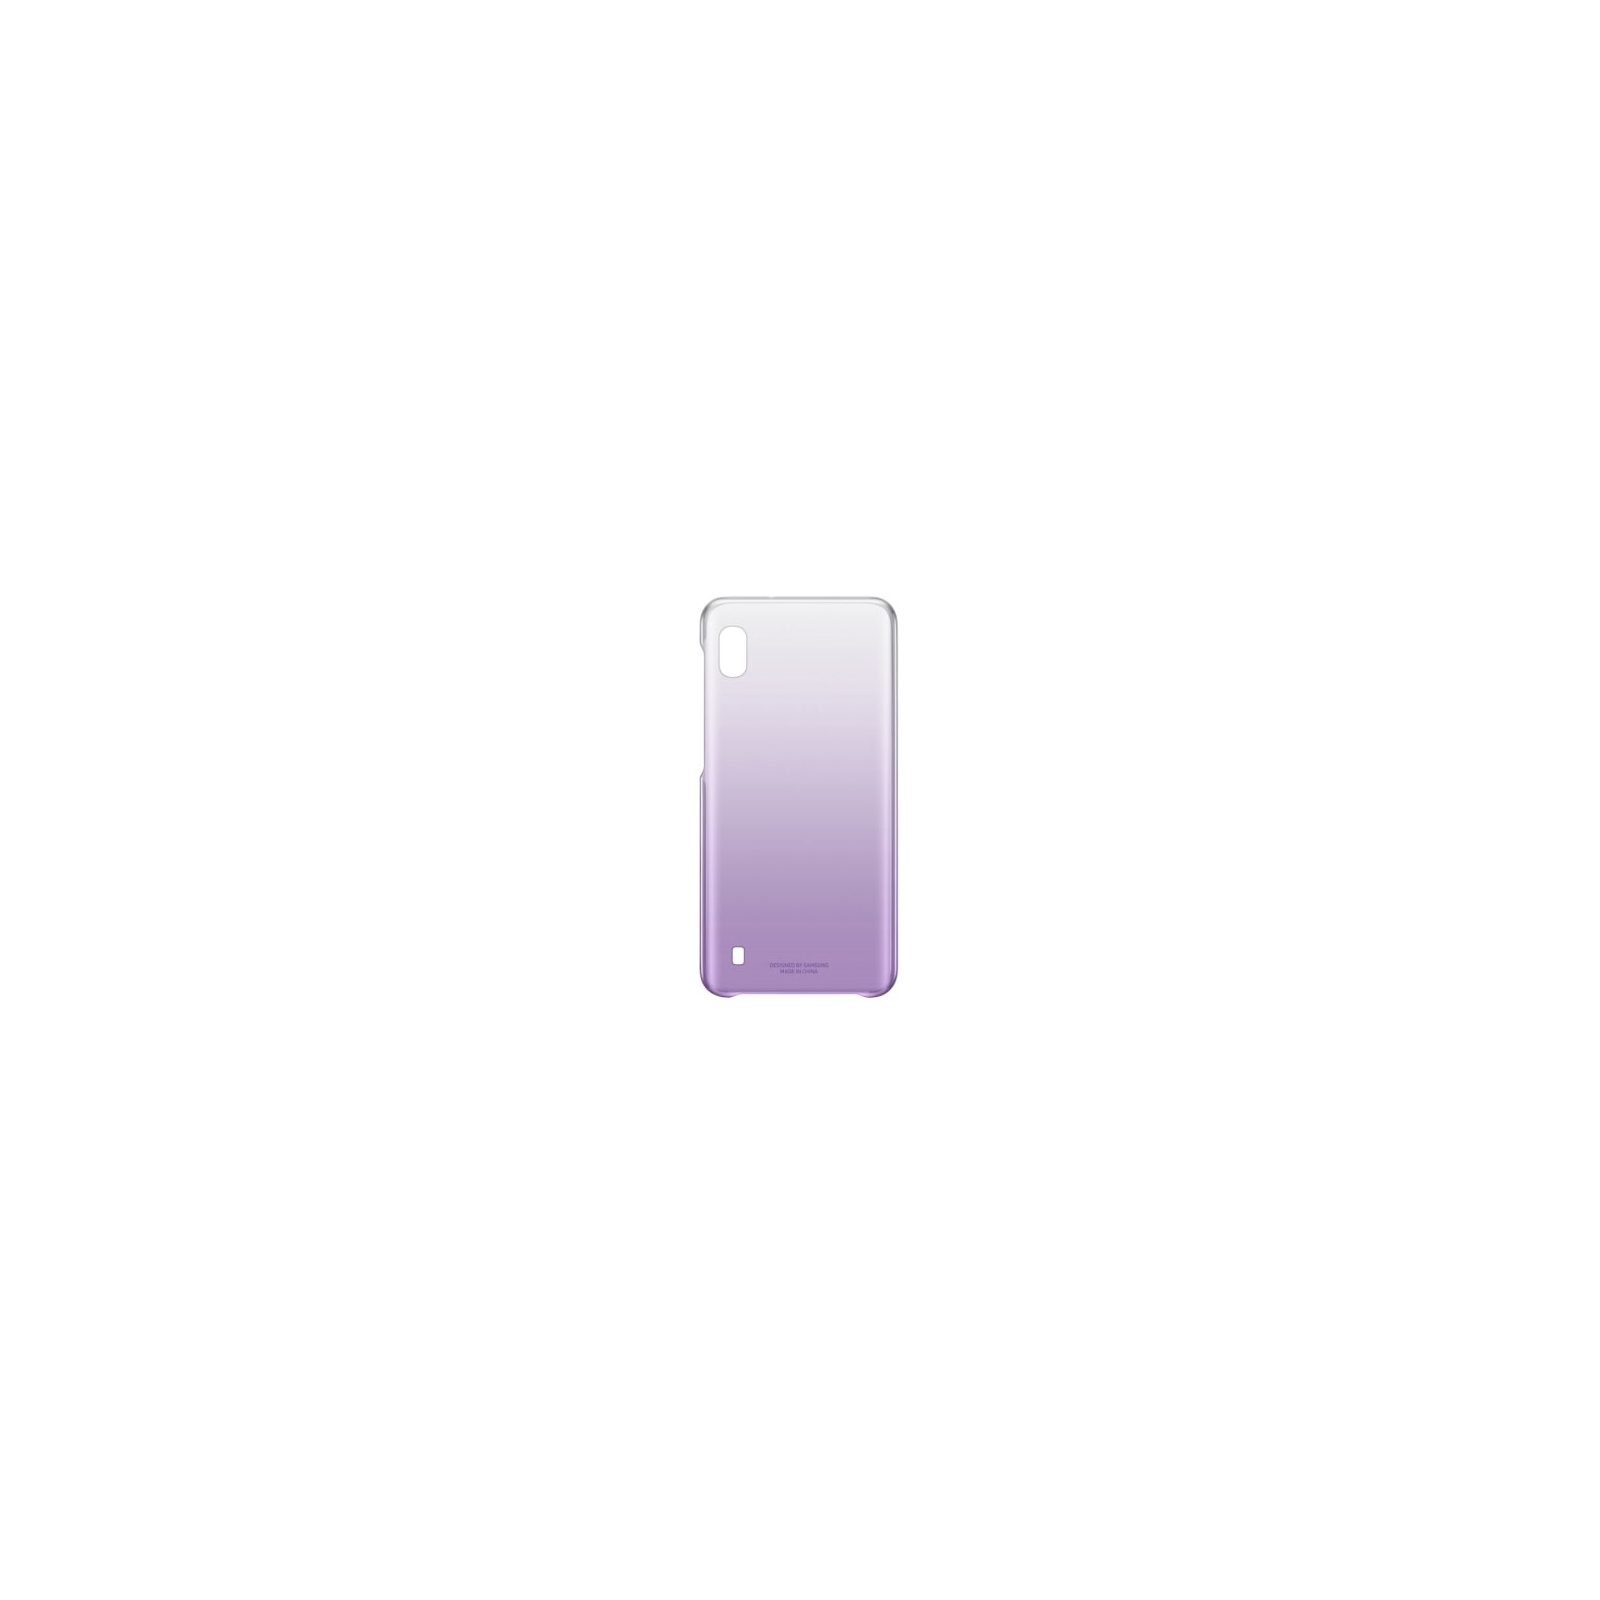 Чехол для мобильного телефона Samsung Galaxy A10 (A105F) Violet Gradation Cover (EF-AA105CVEGRU)